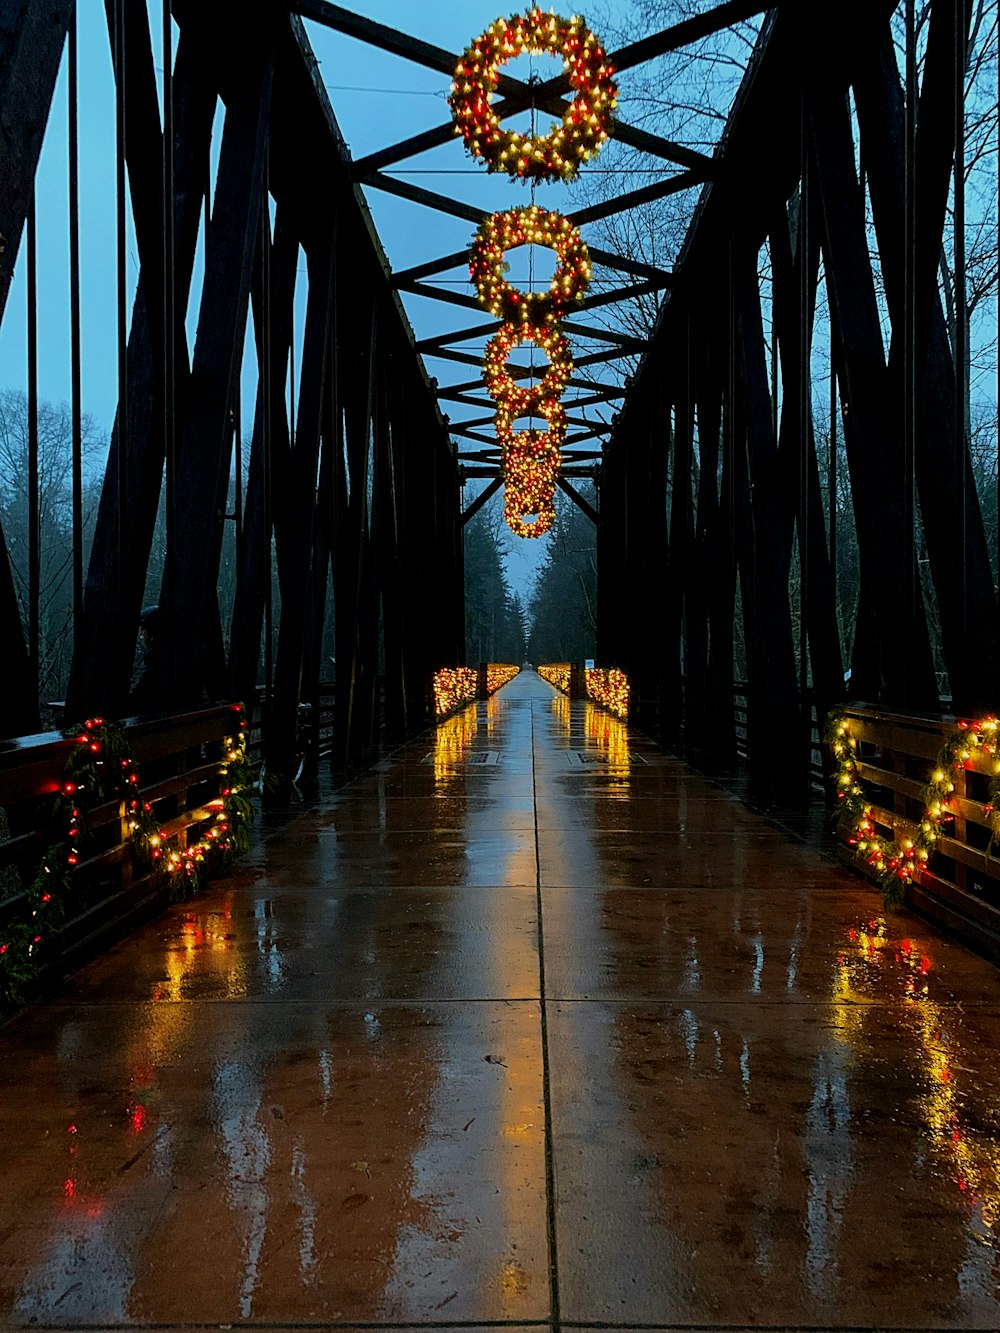 夕暮れ時の茶色の木造橋